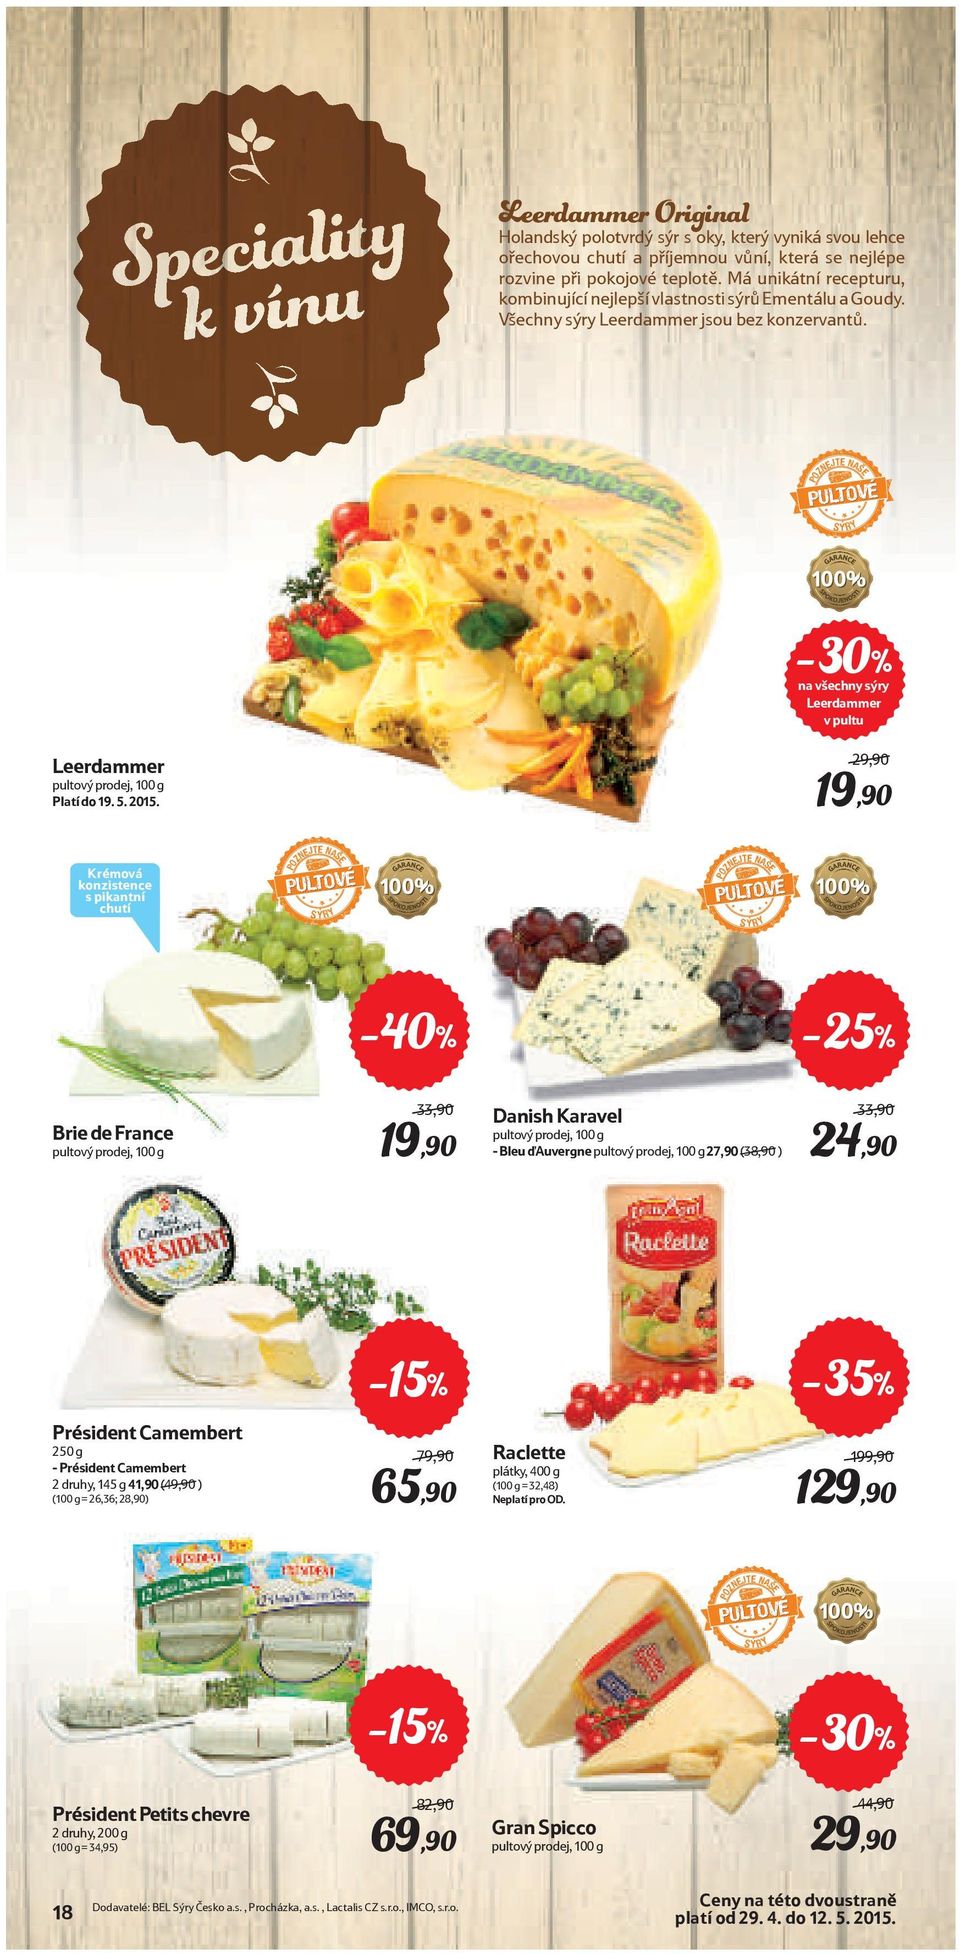 POZNEJTE NASE PULTOVÉ SÝRY -30% na všechny sýry Leerdammer v pultu Leerdammer pultový prodej, 100 g Platí do 19. 5. 2015.